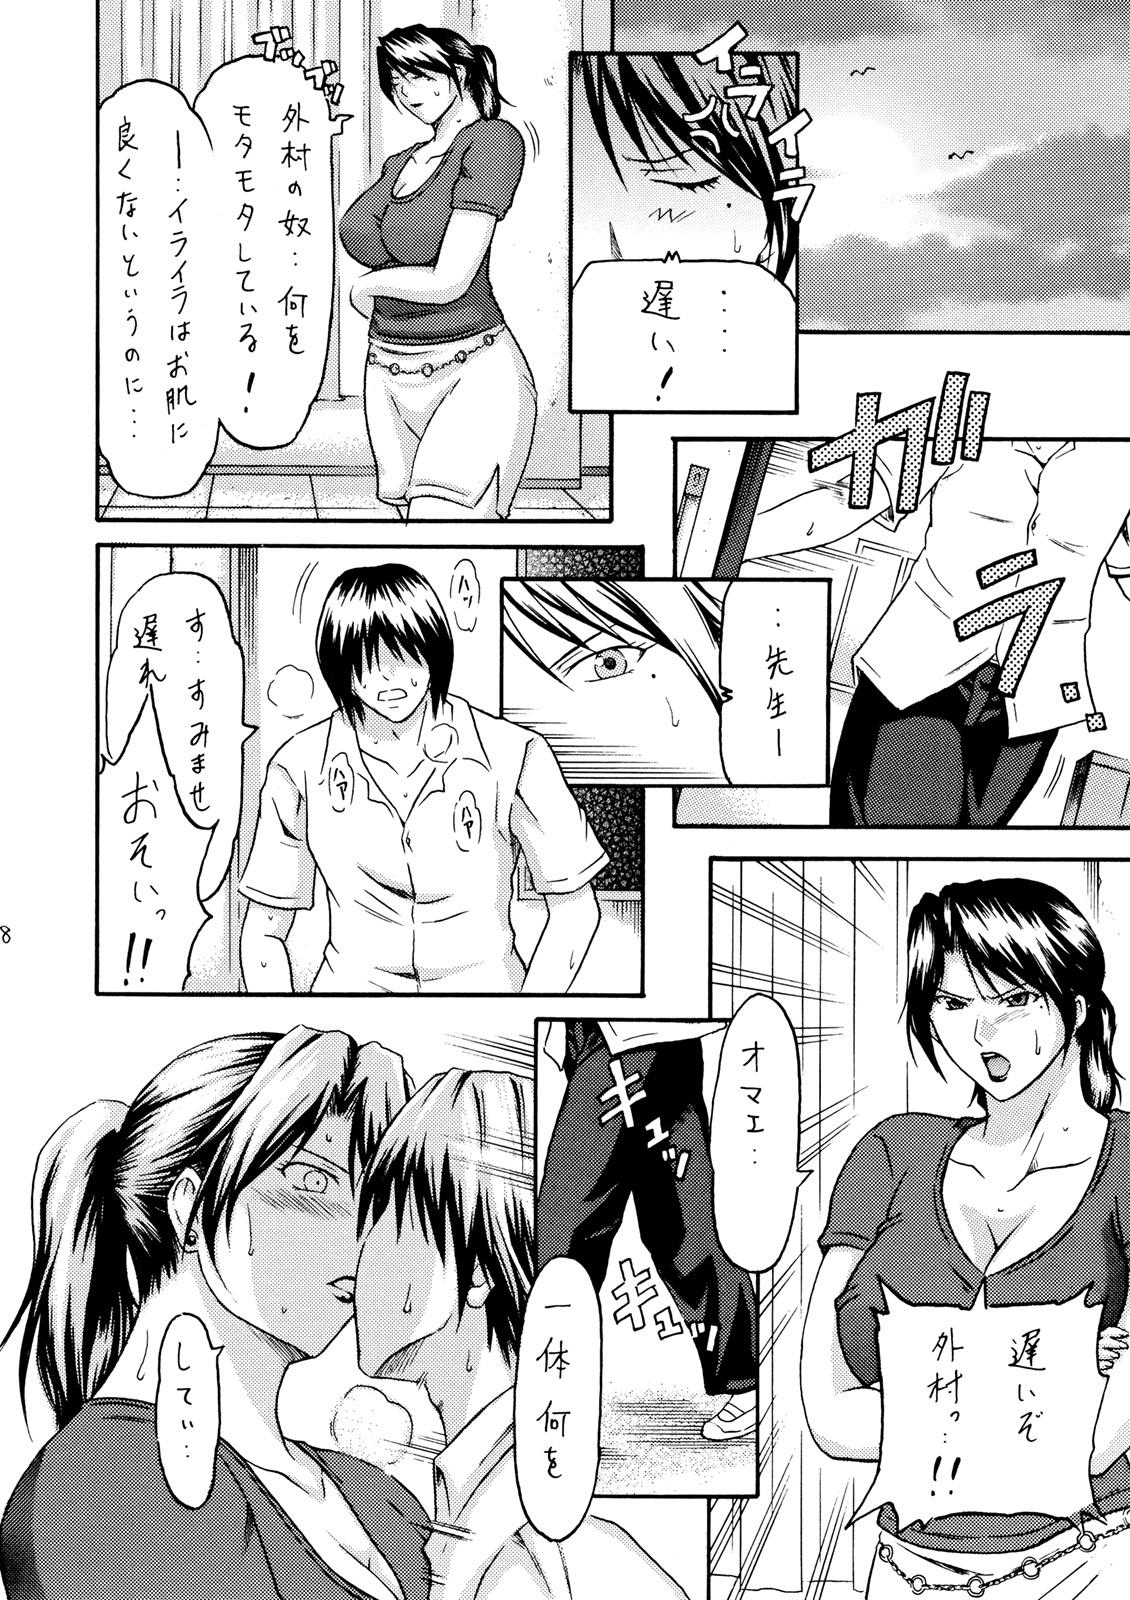 Girlfriends Zoku Houkago no Joou - Ichigo 100 First Time - Page 7